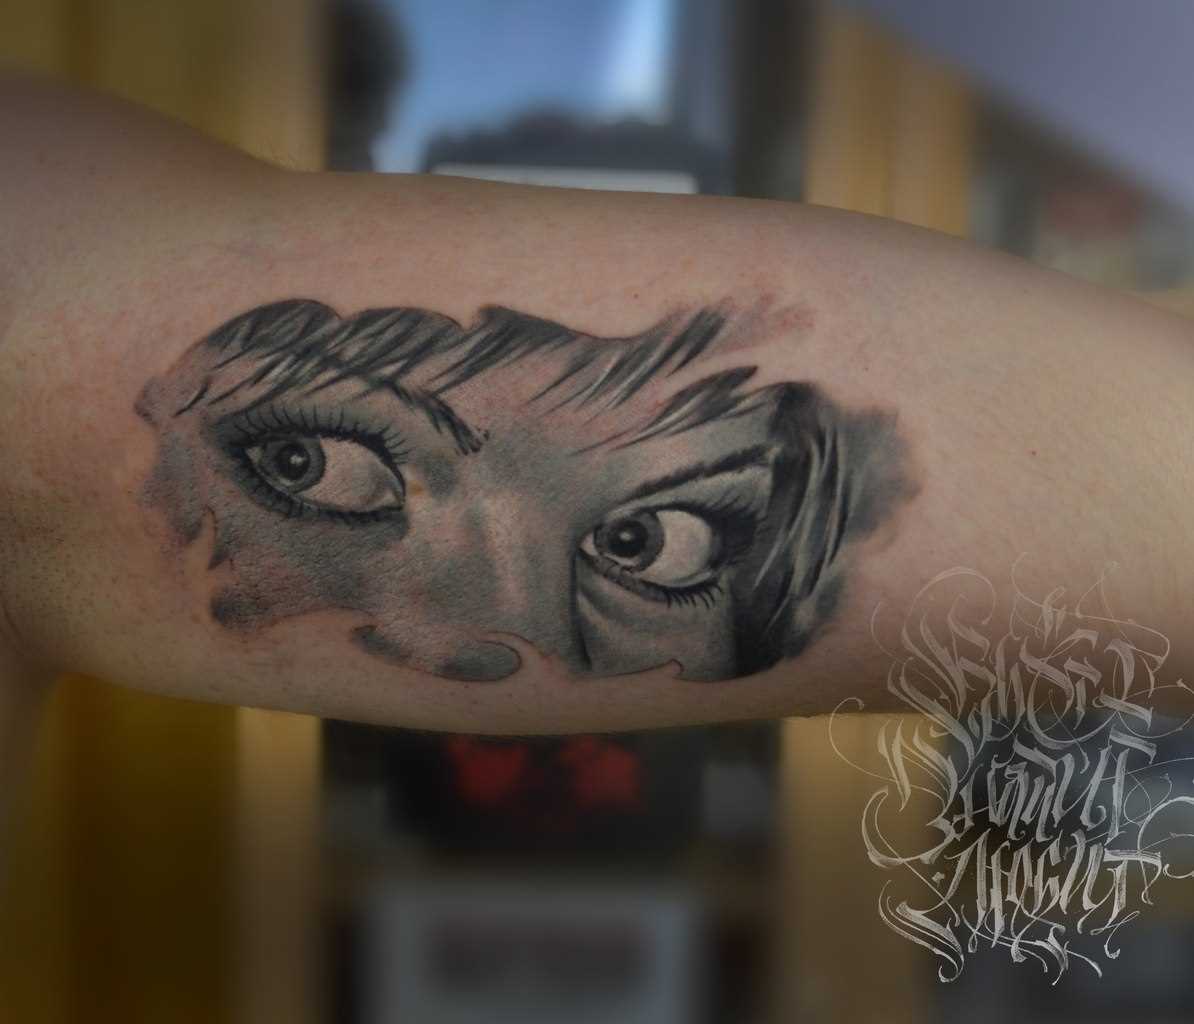 A tatuagem no ombro de um cara - de olho